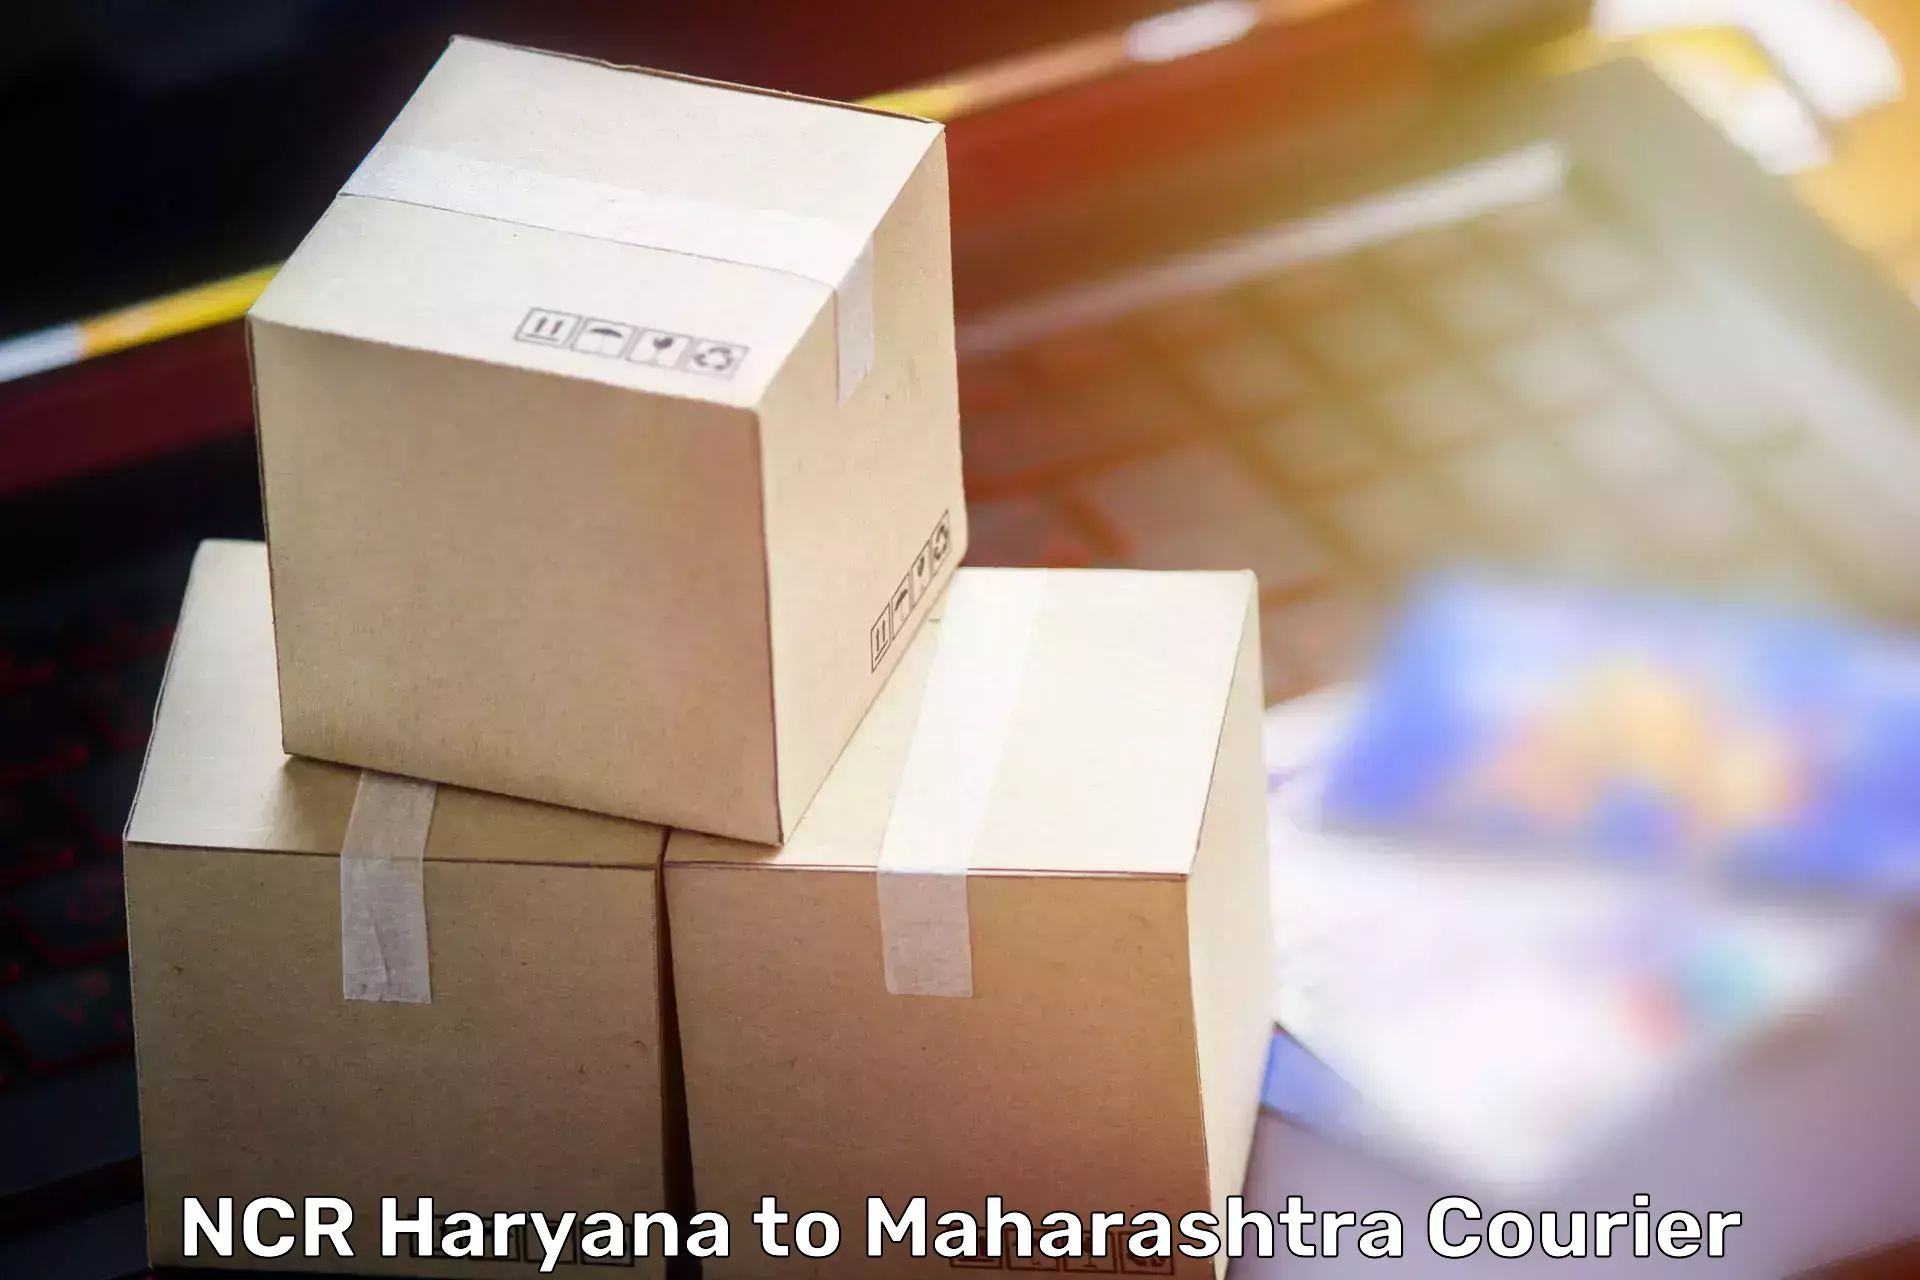 Nationwide furniture transport NCR Haryana to Yavatmal